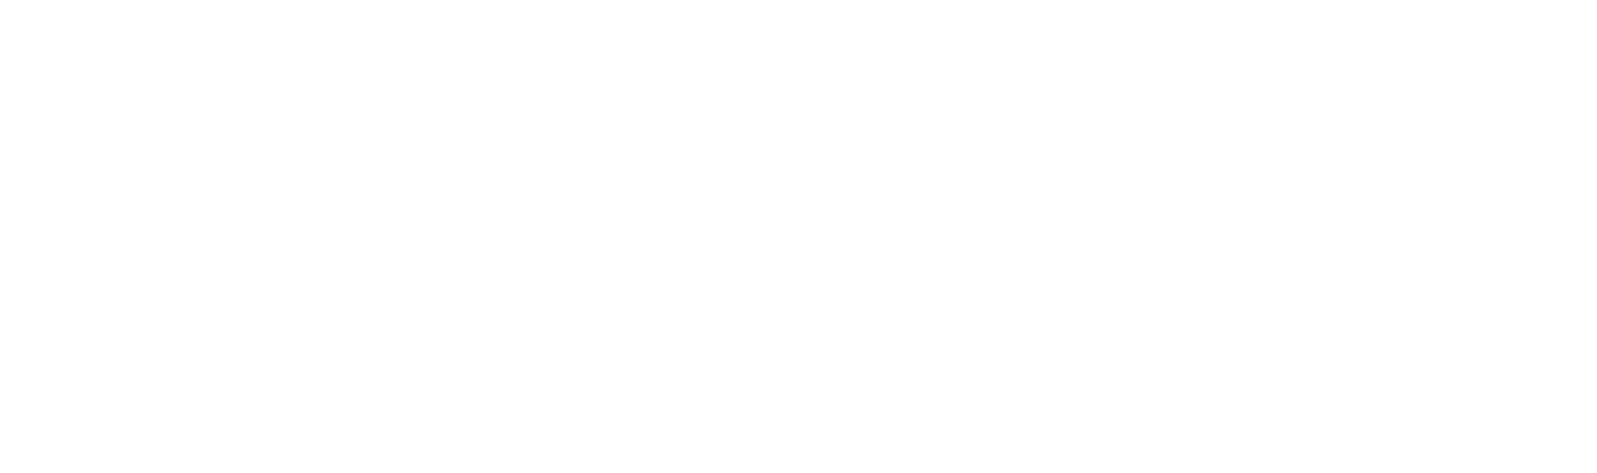 Roku logo large for dark backgrounds (transparent PNG)